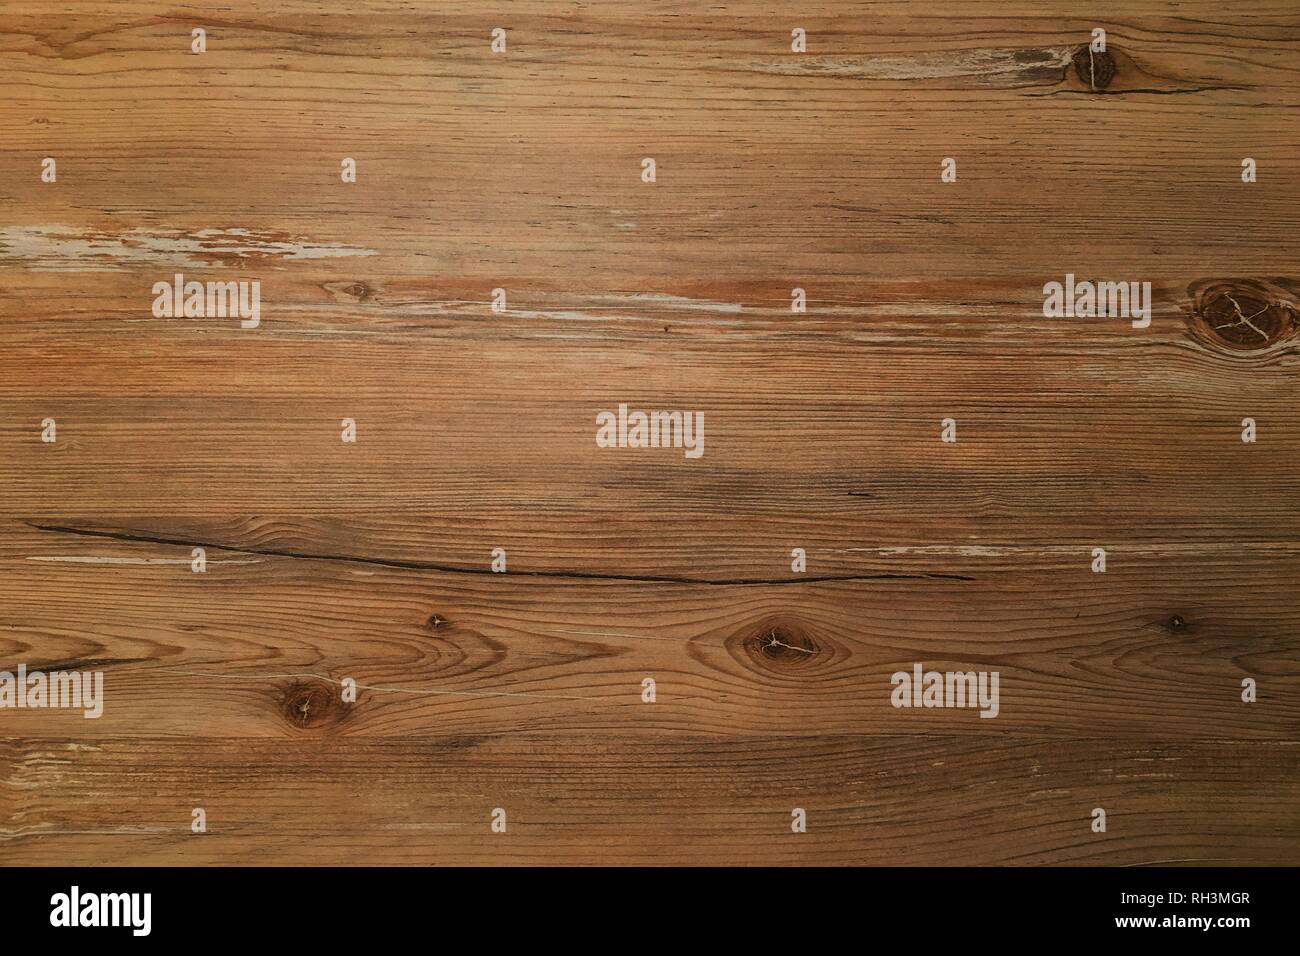 brown wood texture, dark wooden background Stock Photo